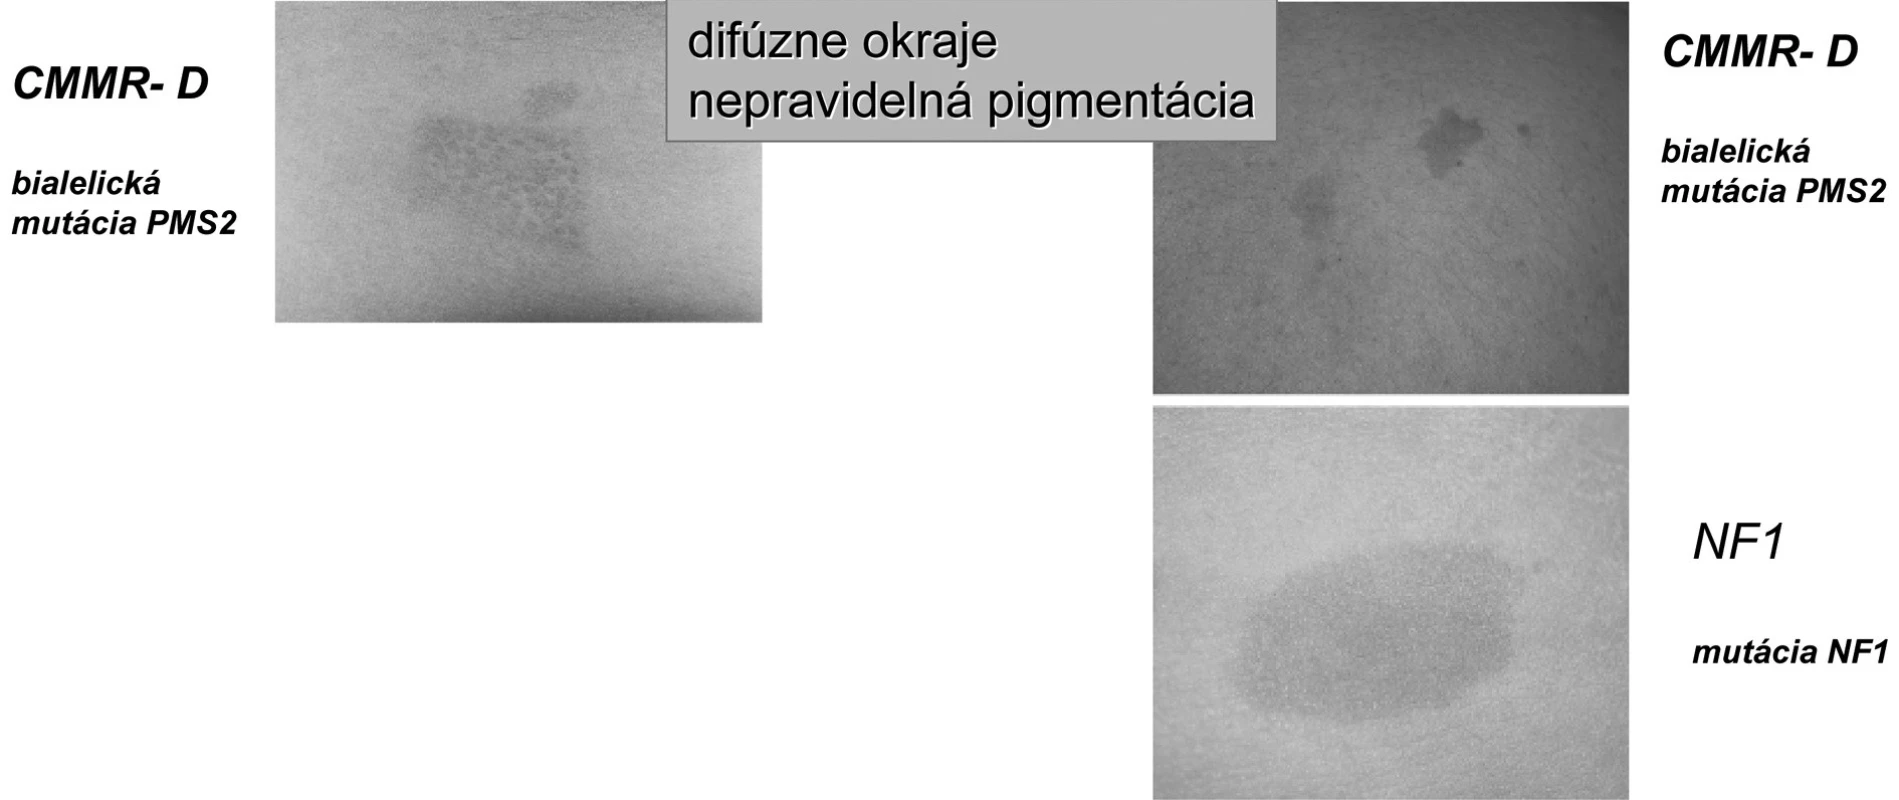 Charakter CAL pigmentácií pri syndróme deficitu konštitučného „Mismeč reparačného systému“
(CMMR-D) [18].